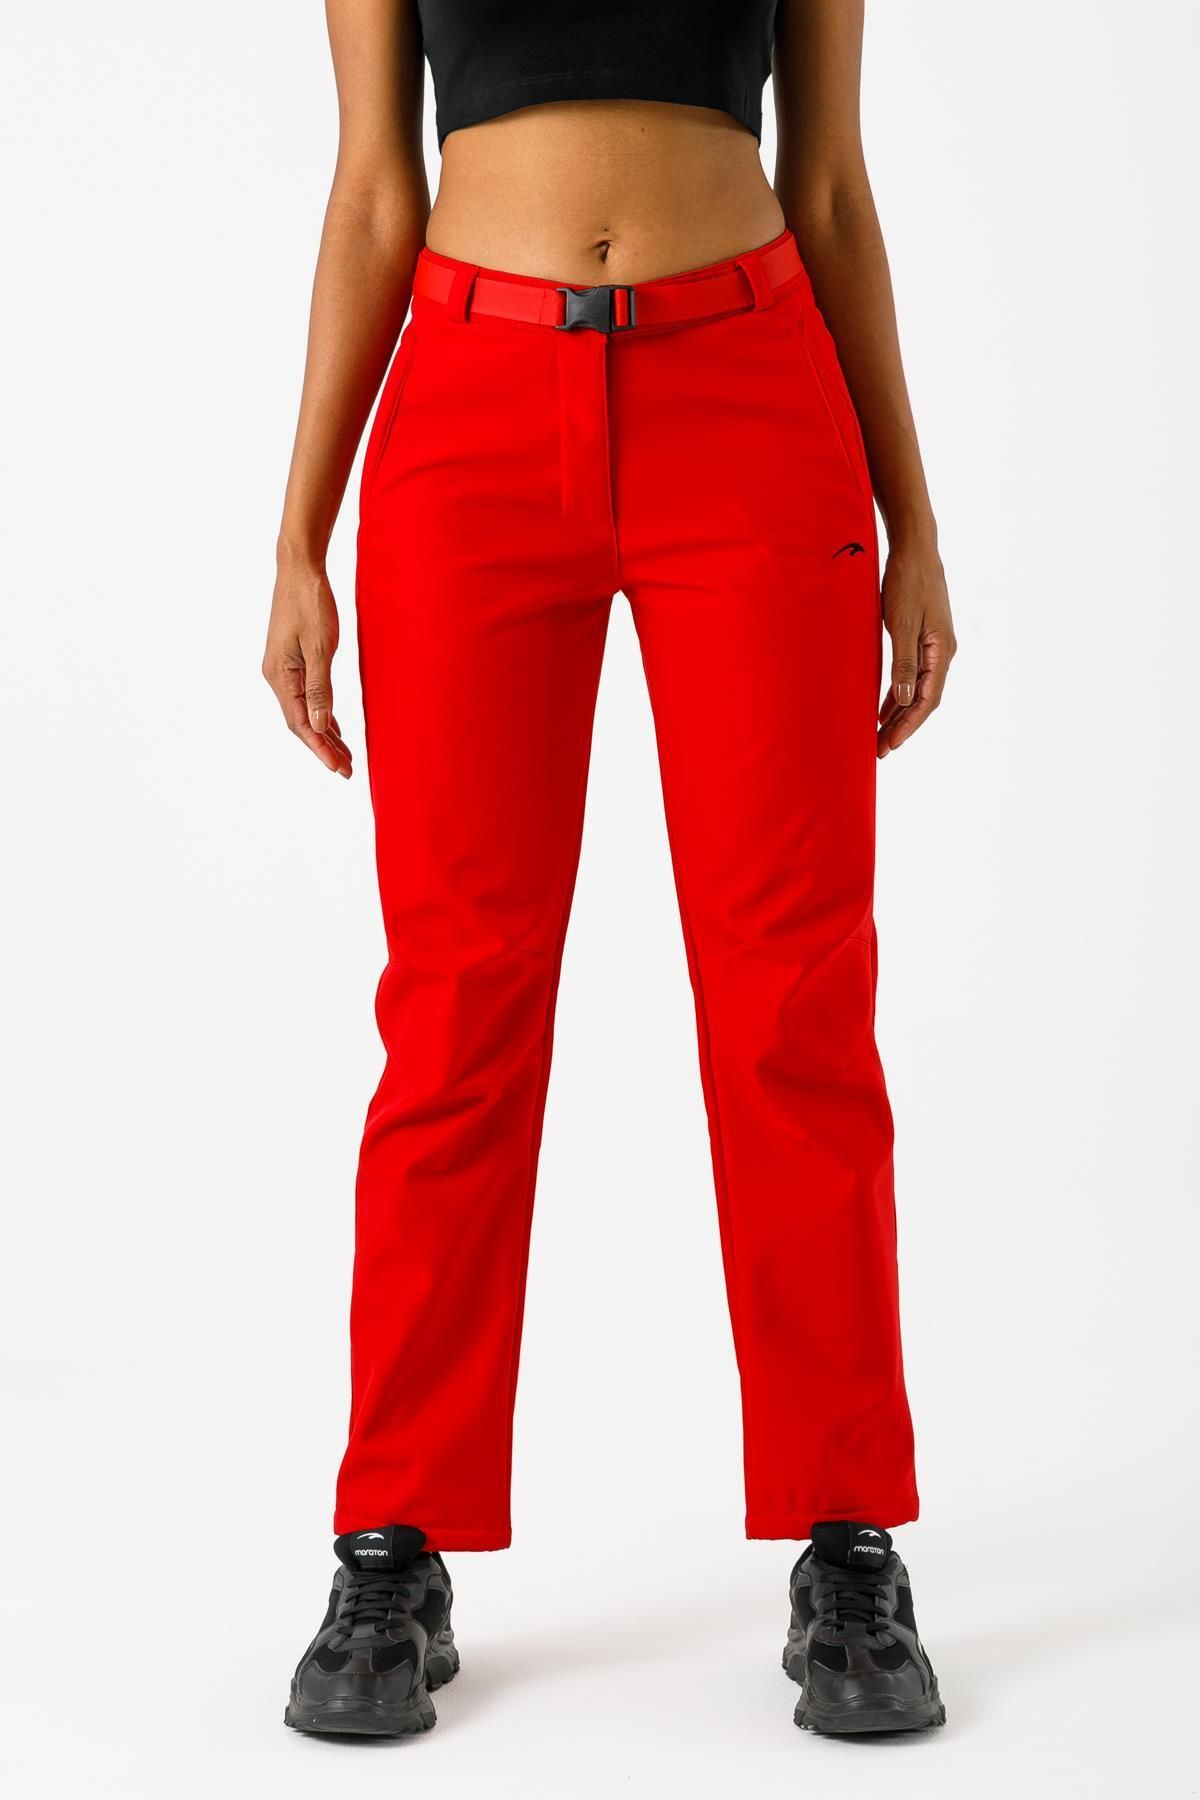 MARATON Sportswear Regular Kadın Outdoor Koyu Kırmızı Pantolon 17711